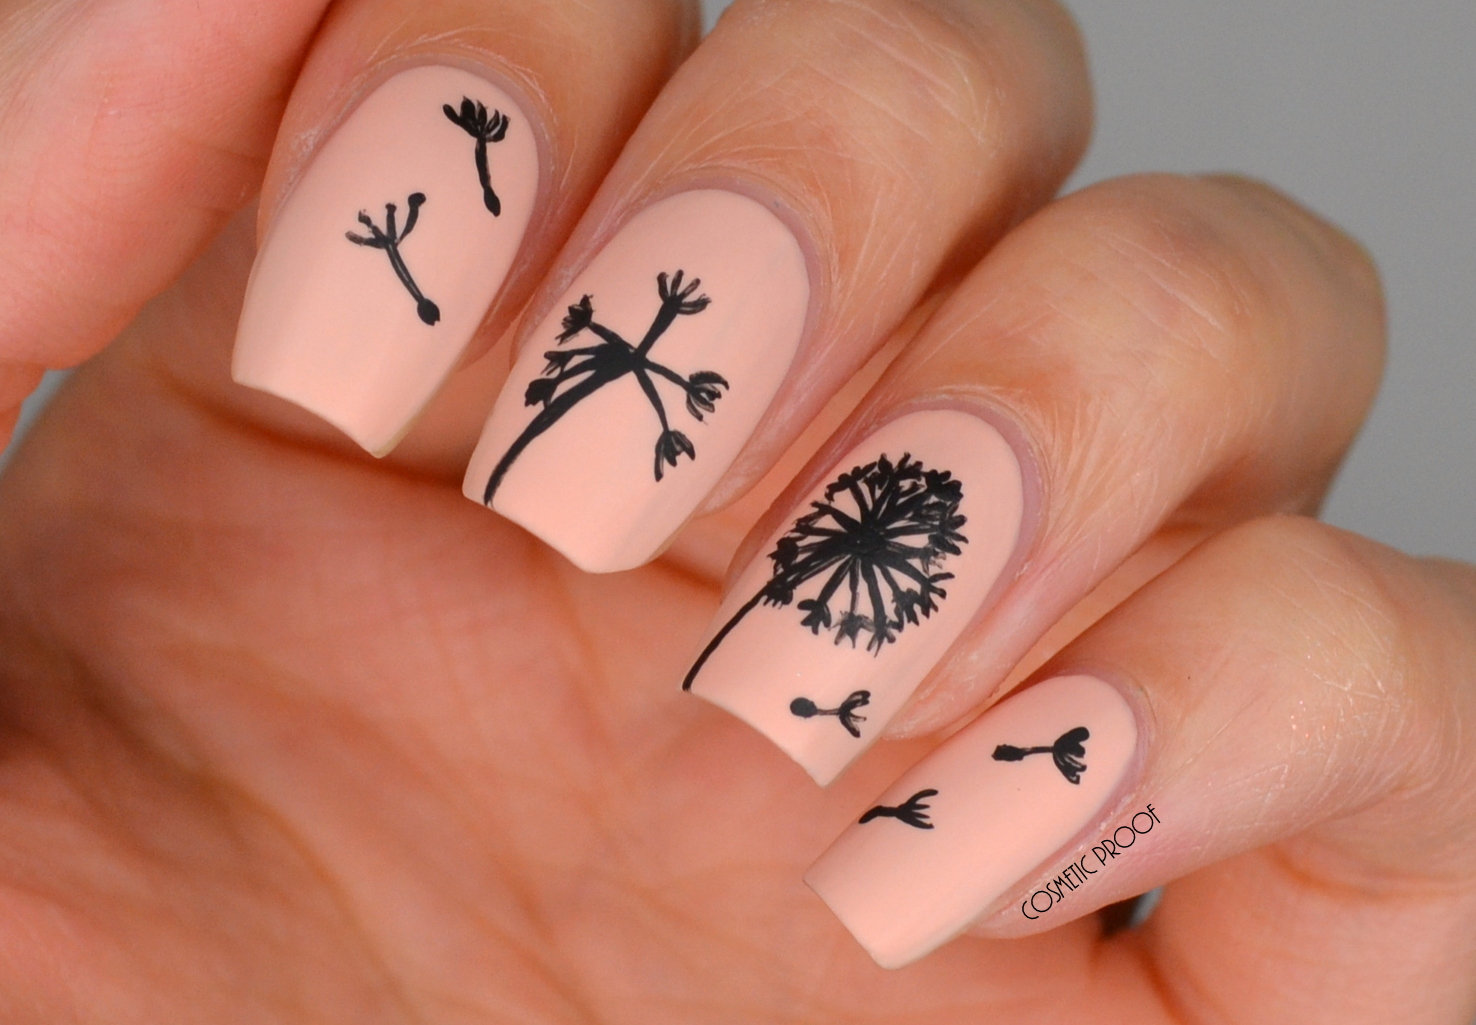 5. Dandelion Flower Nail Art Ideas - wide 7